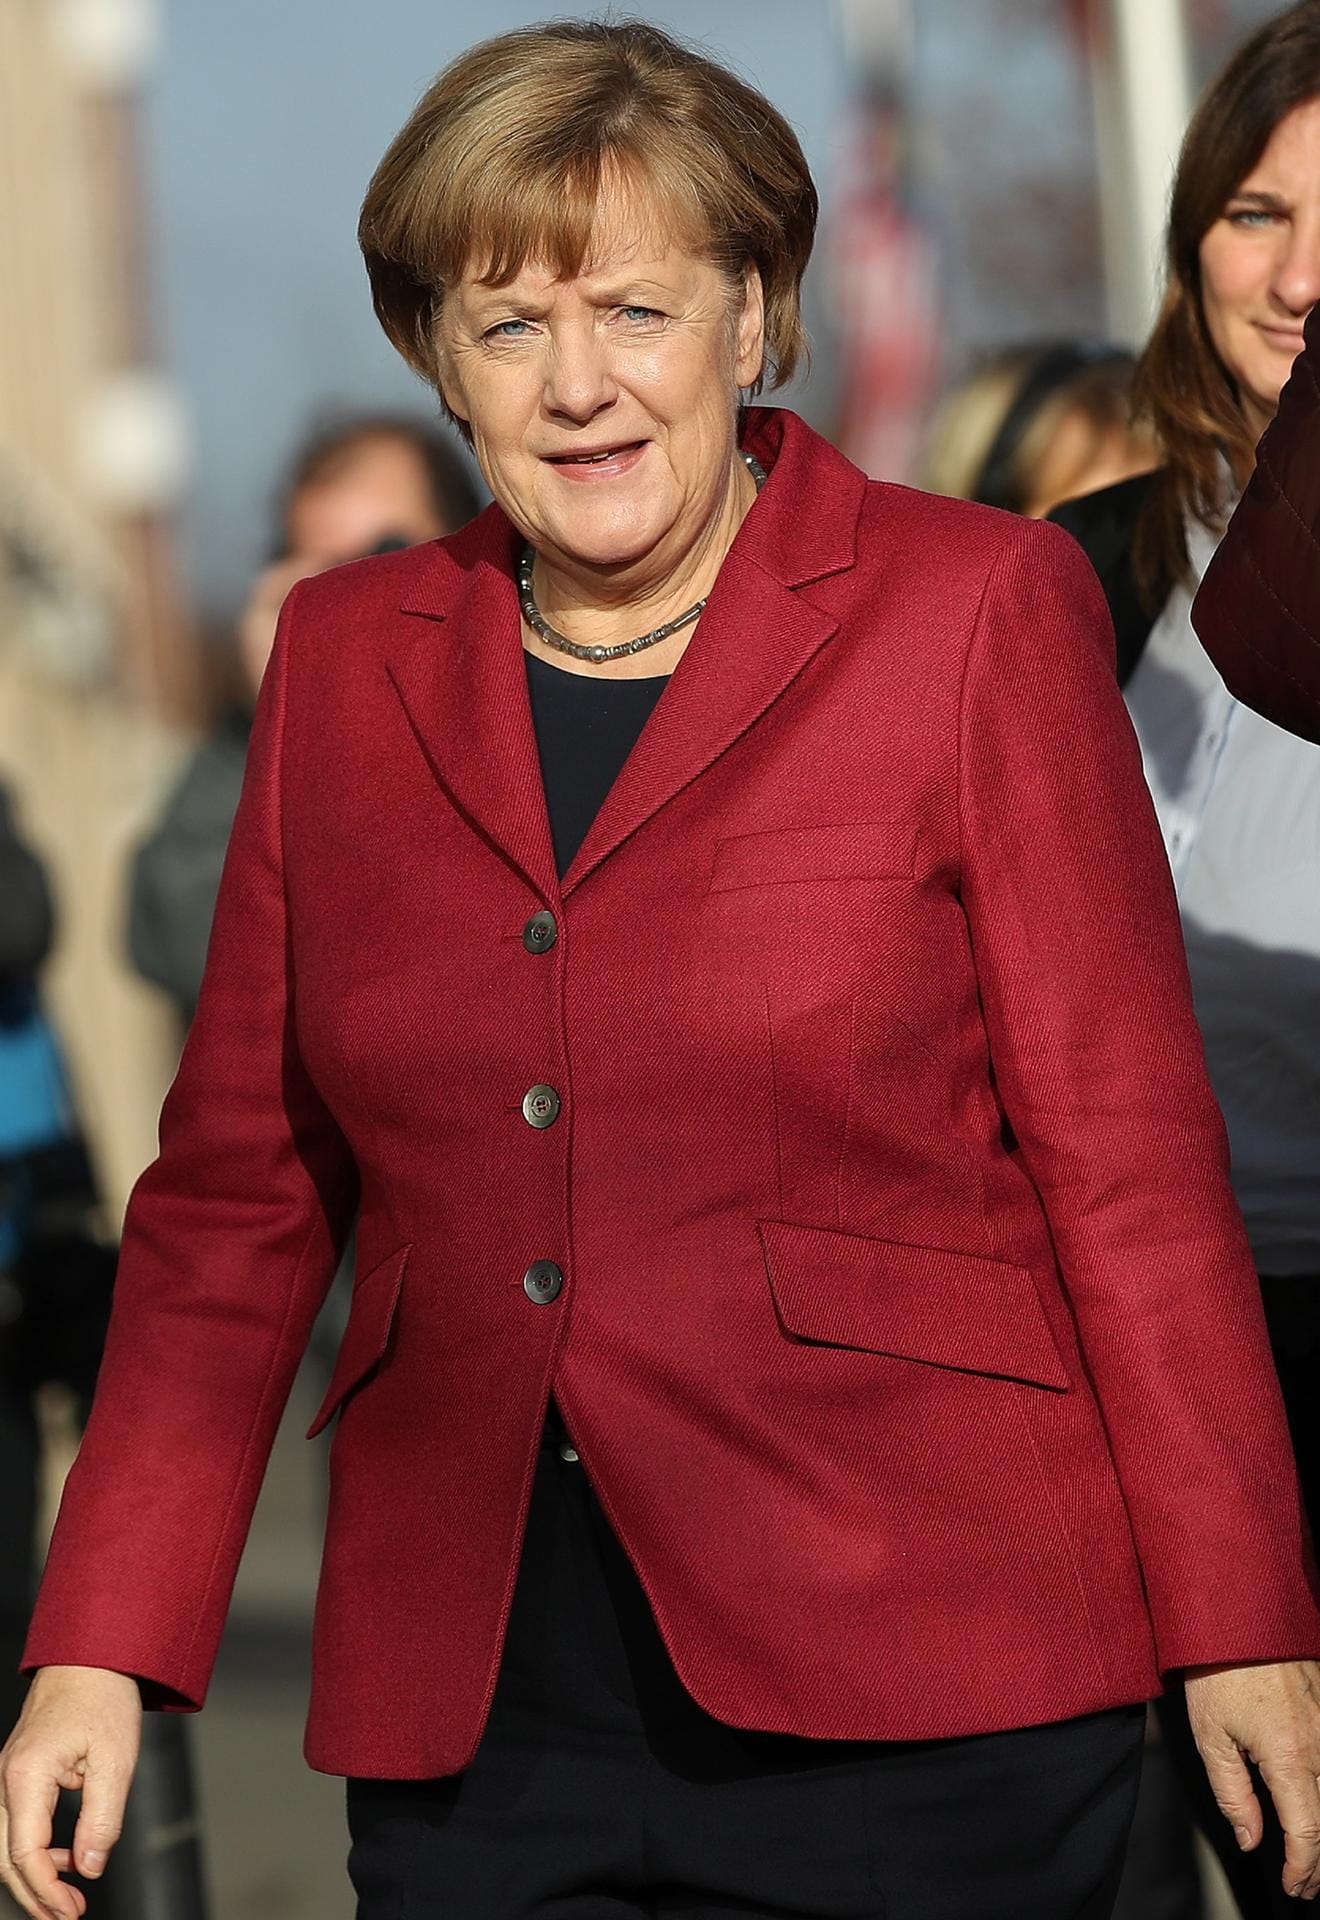 Angela Merkel in Feuerrot.